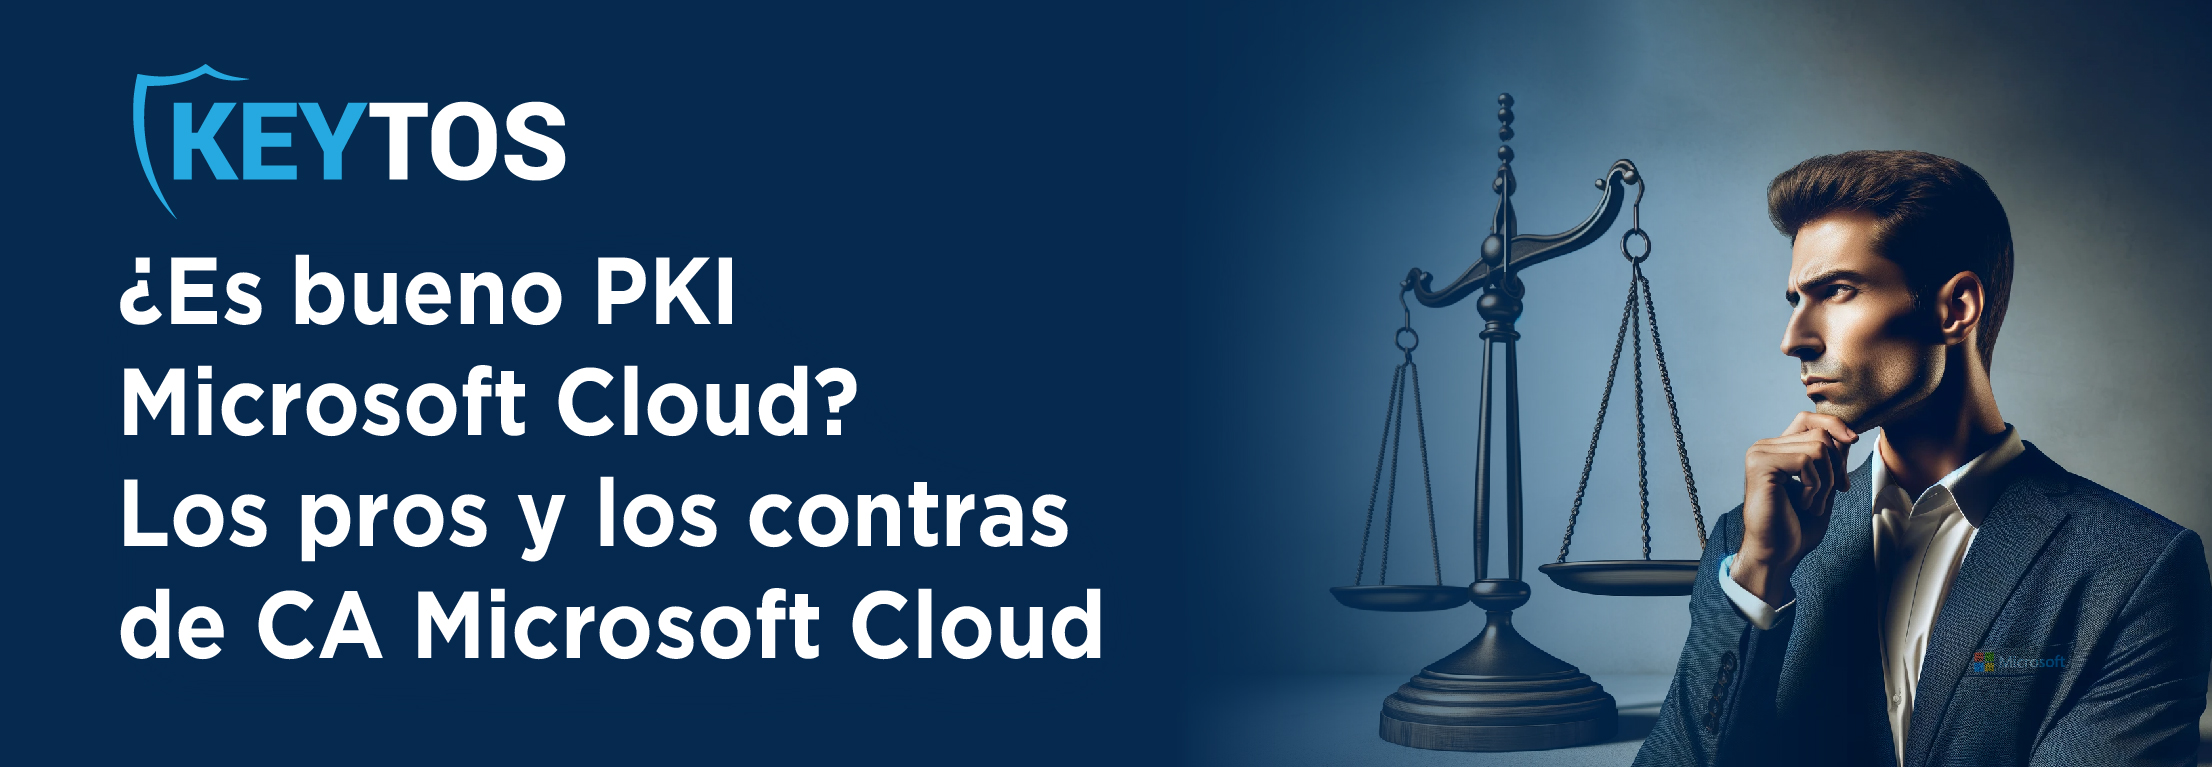 Los pros y los contras de Microsoft Cloud PKI